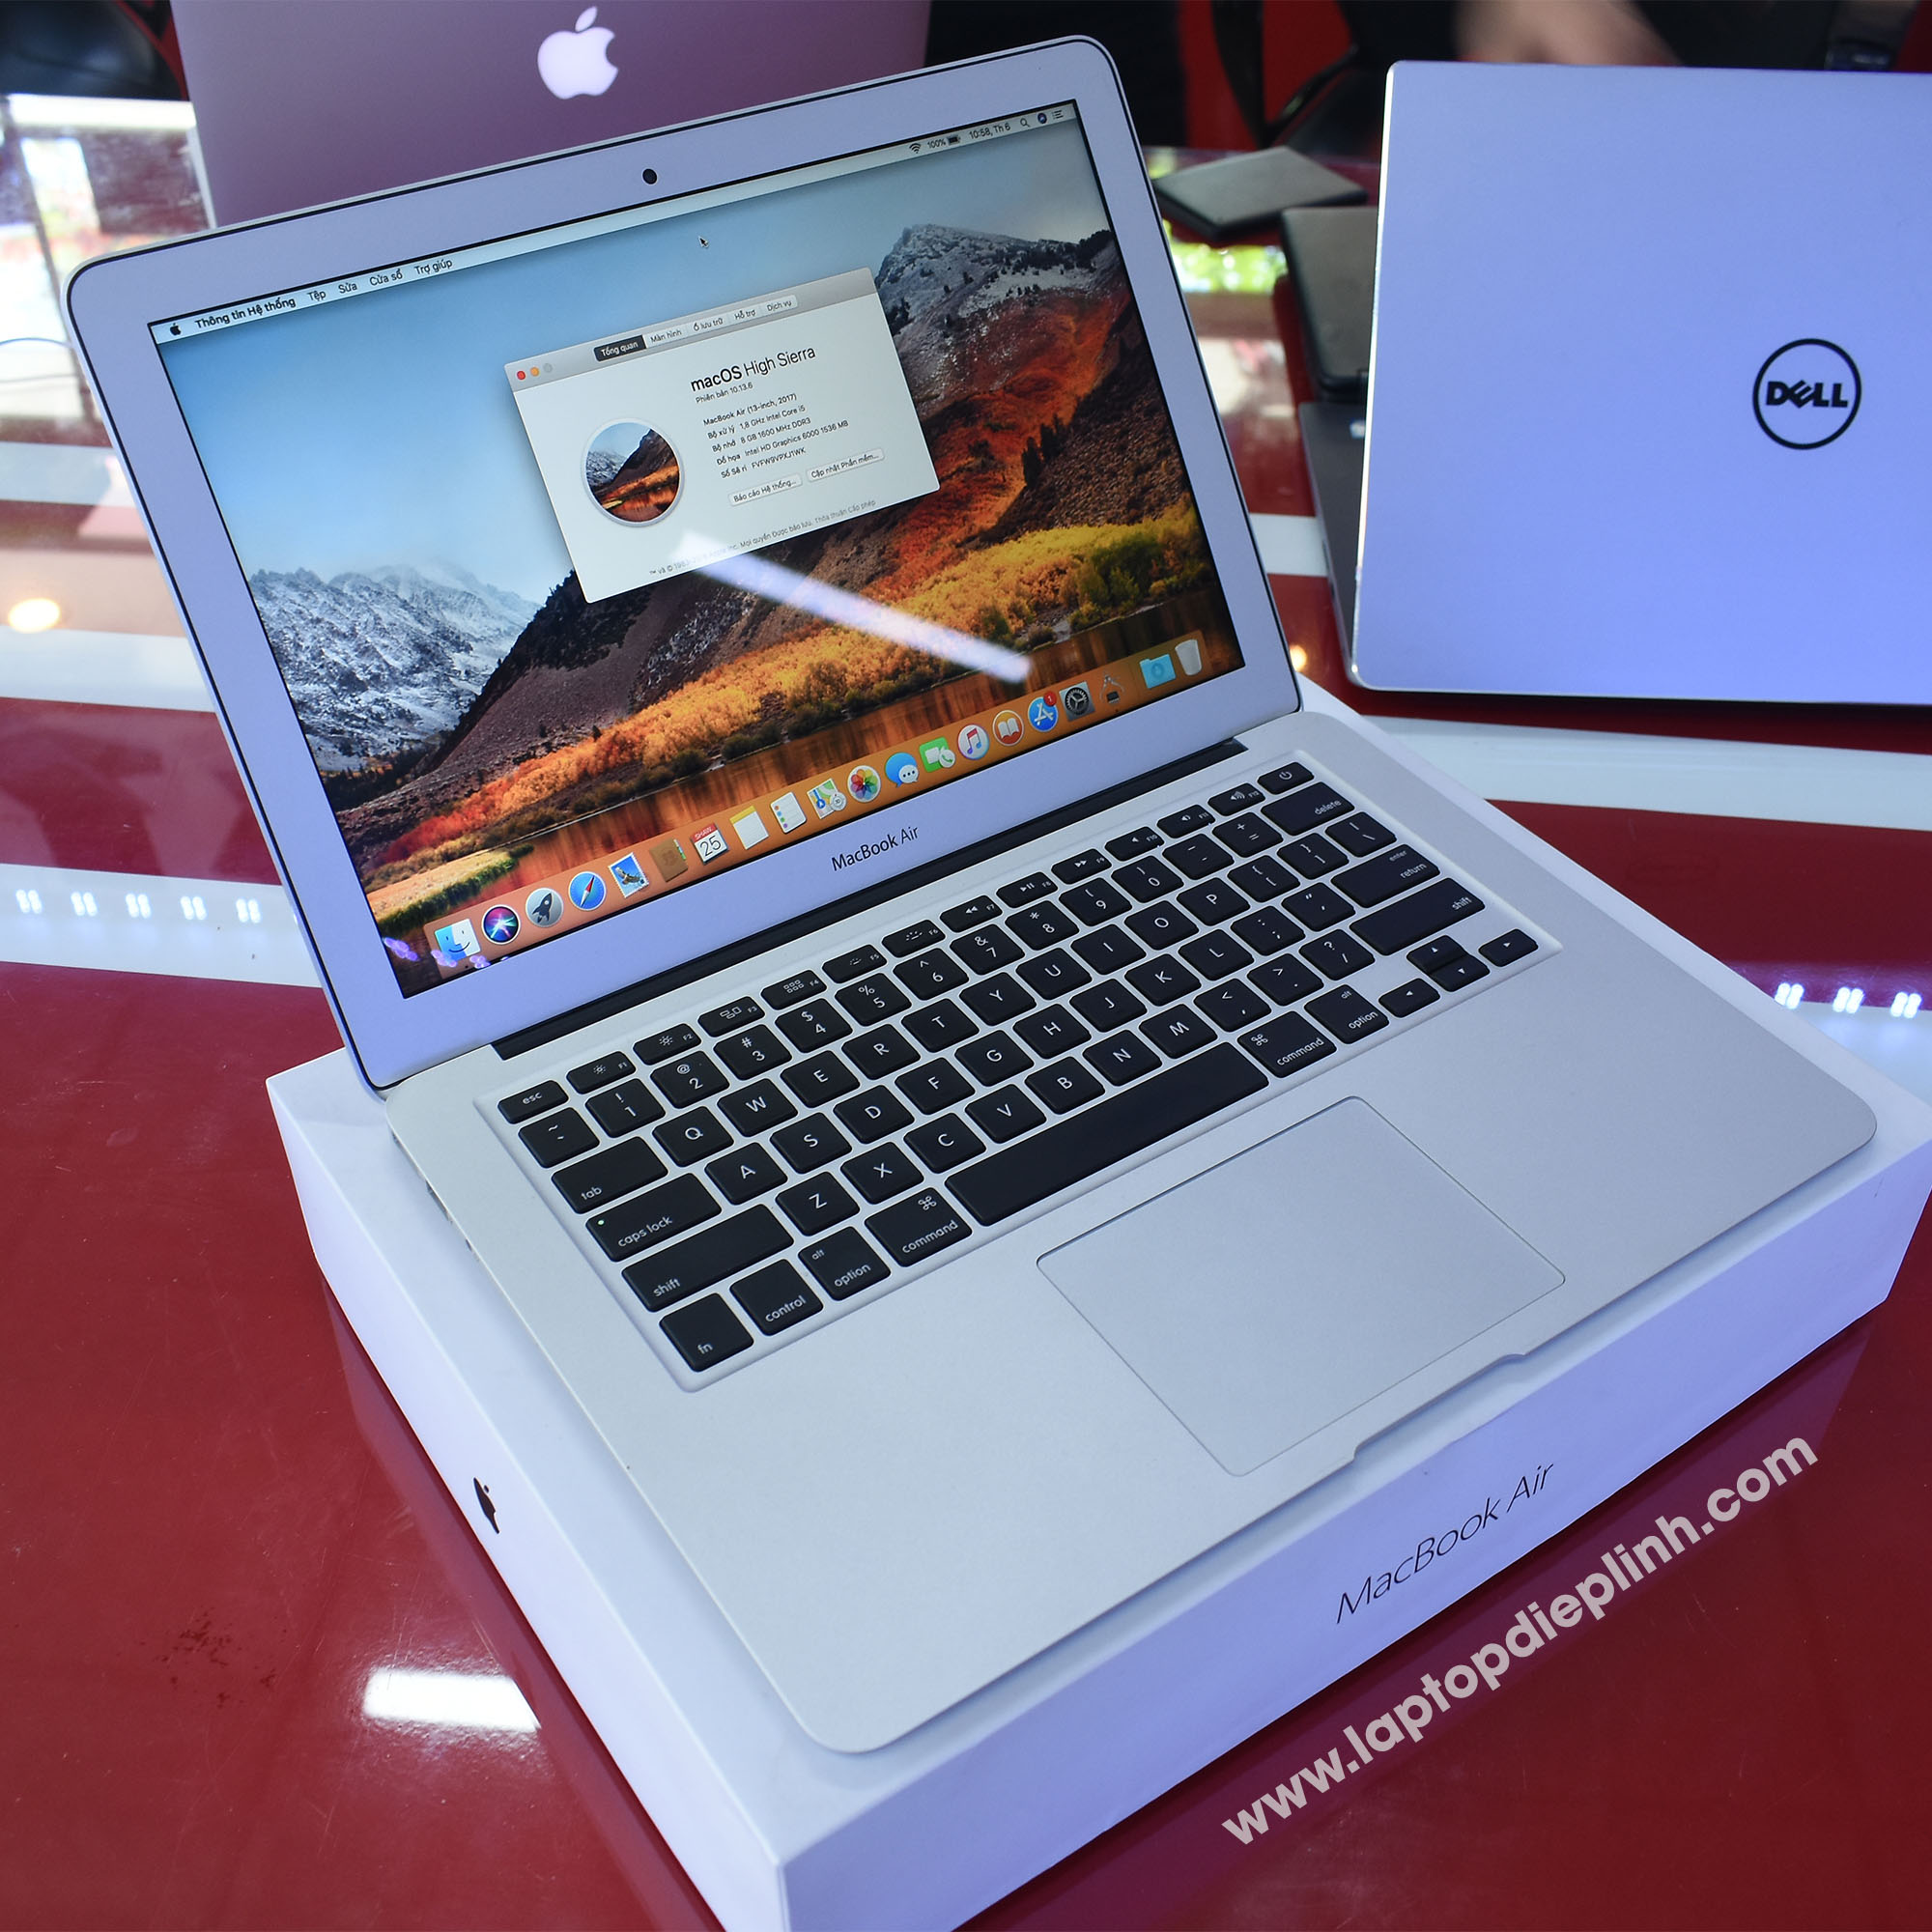 macbook air 2017 - laptop diep linh